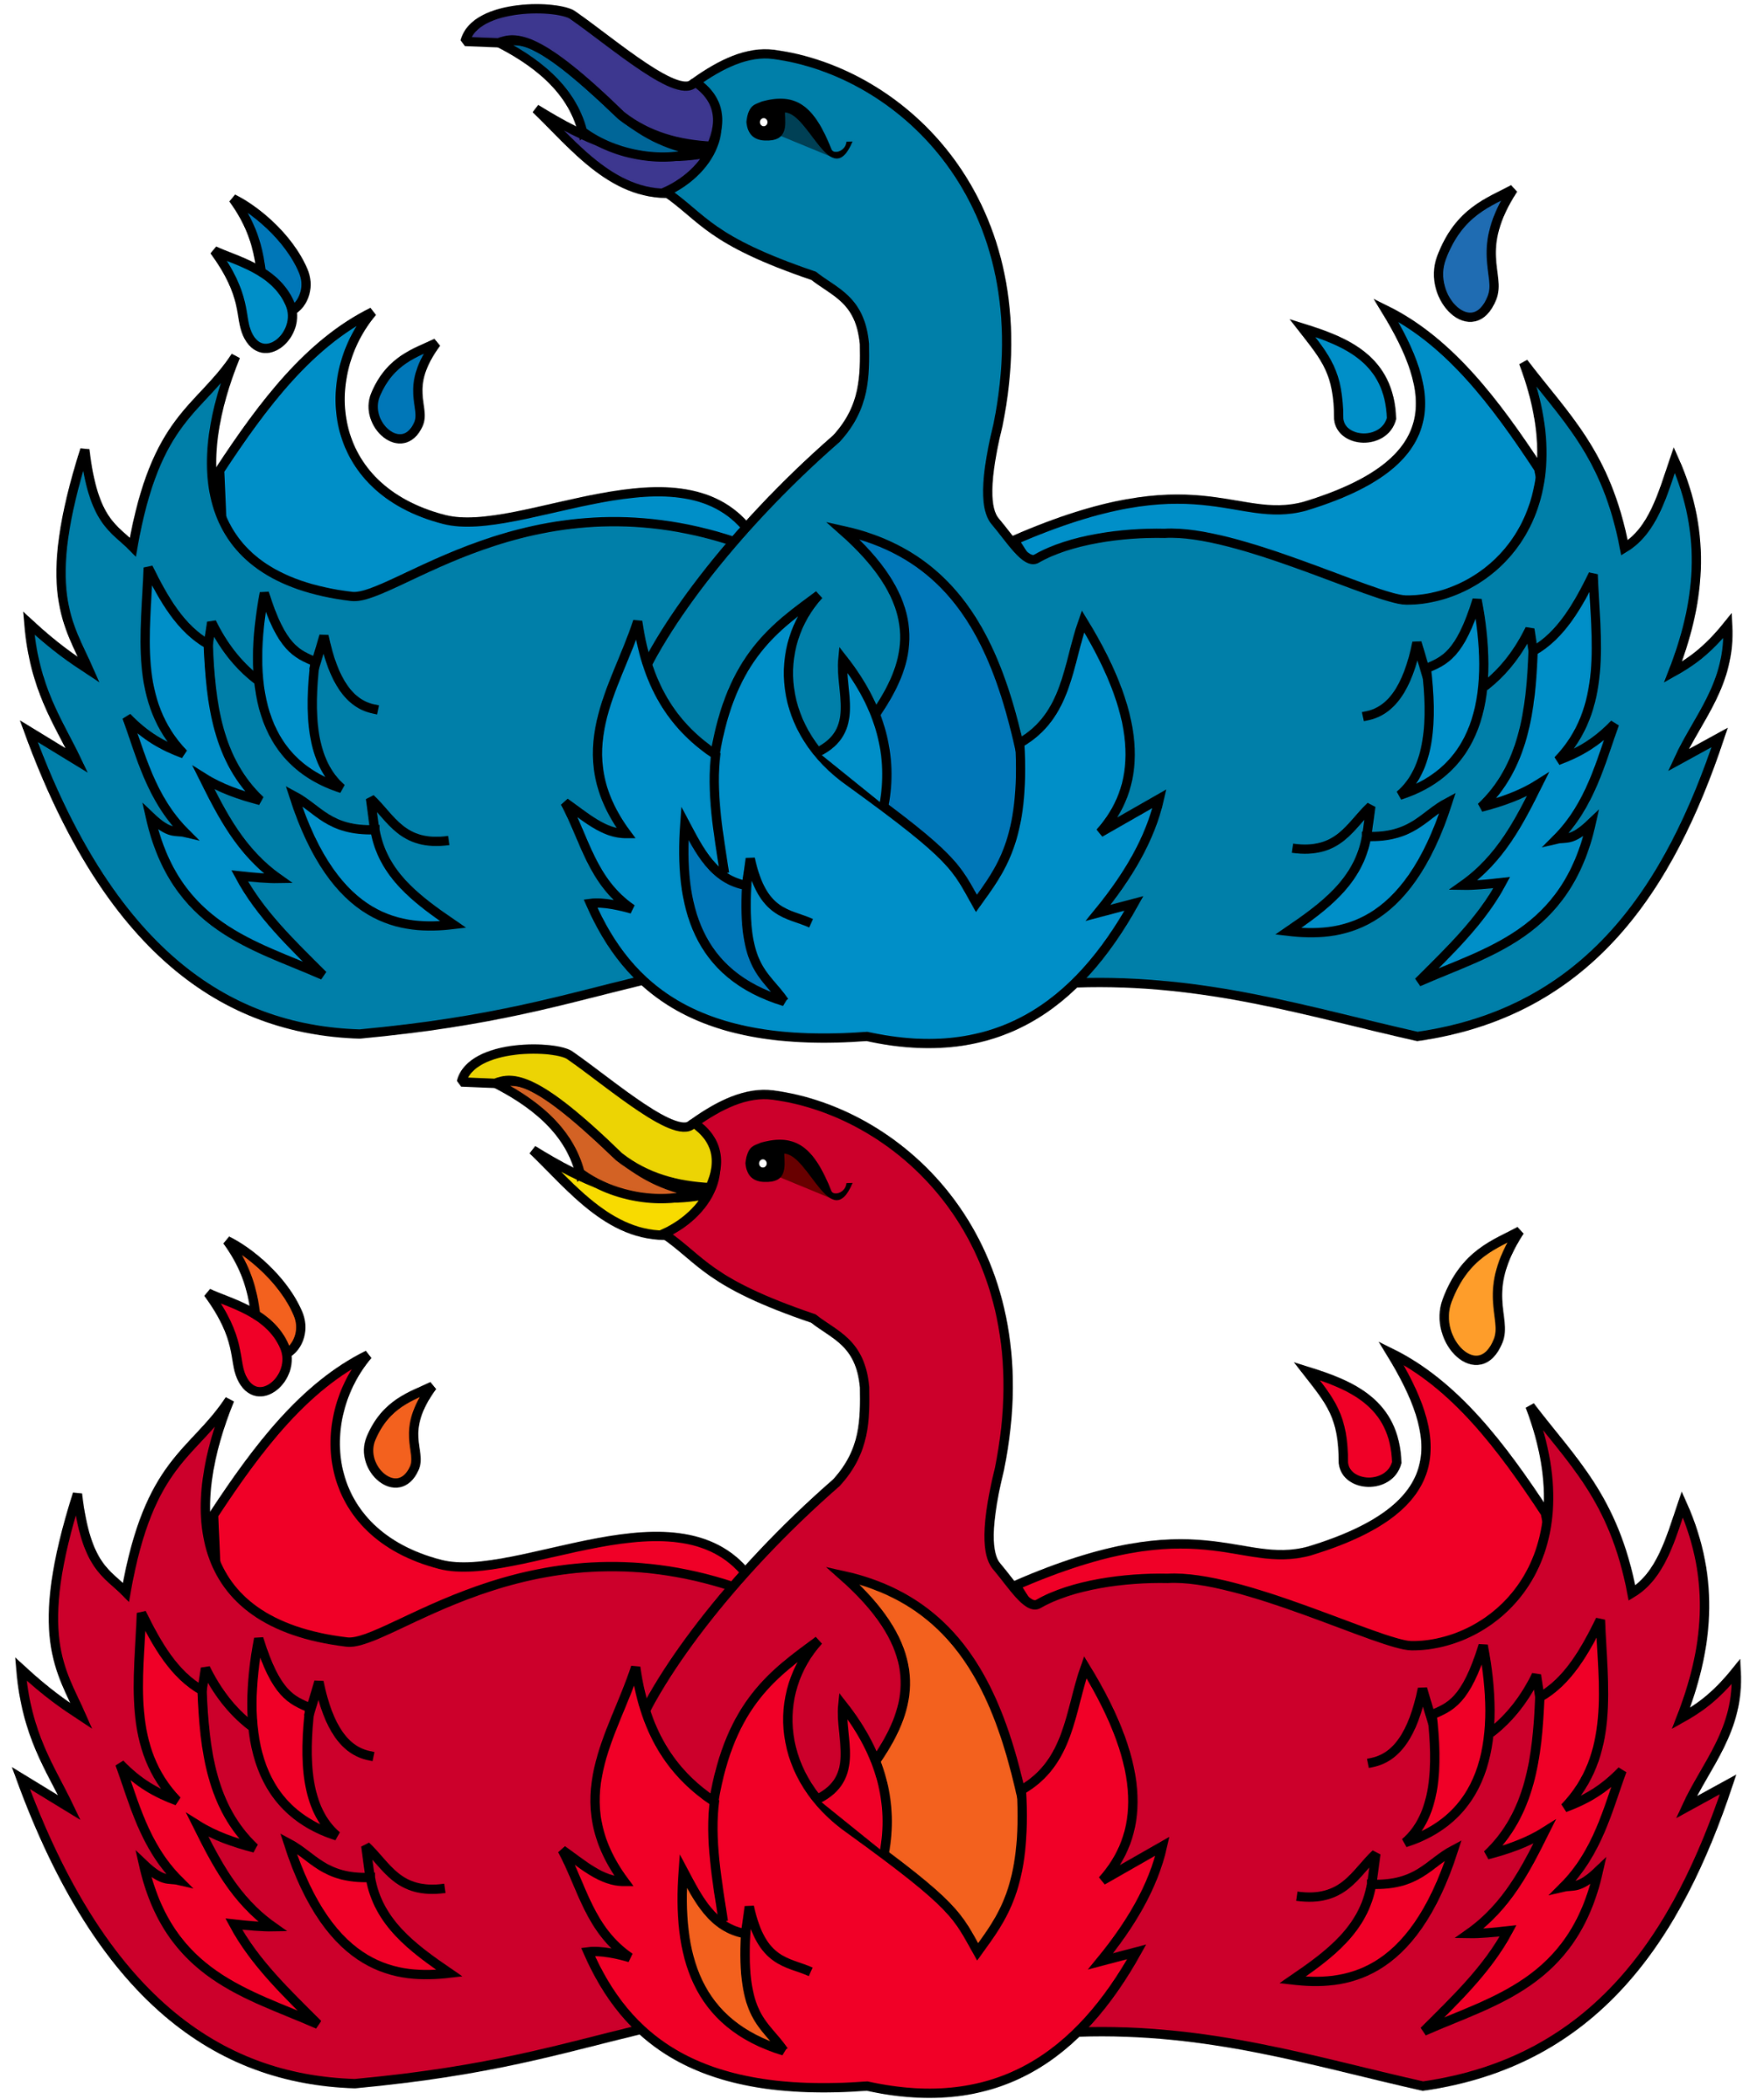 The original Mozilla Phoenix/Thunderbird logos